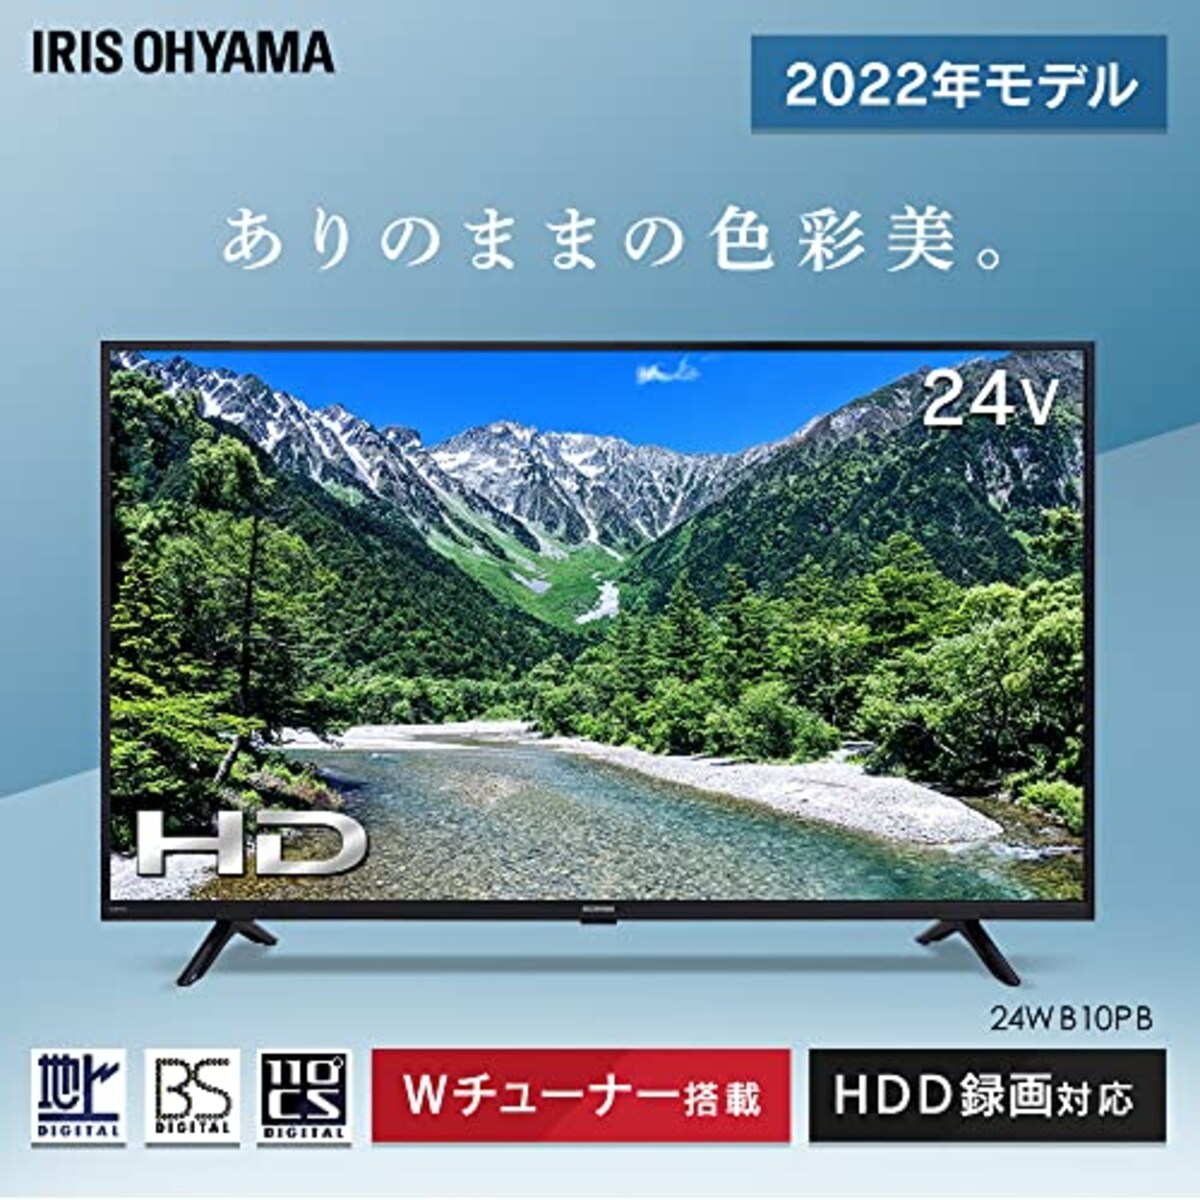  アイリスオーヤマ 24V型 液晶 テレビ 24WB10PB 2022年モデル Wチューナー 裏番組同時録画 外付けHDD録画対応画像3 